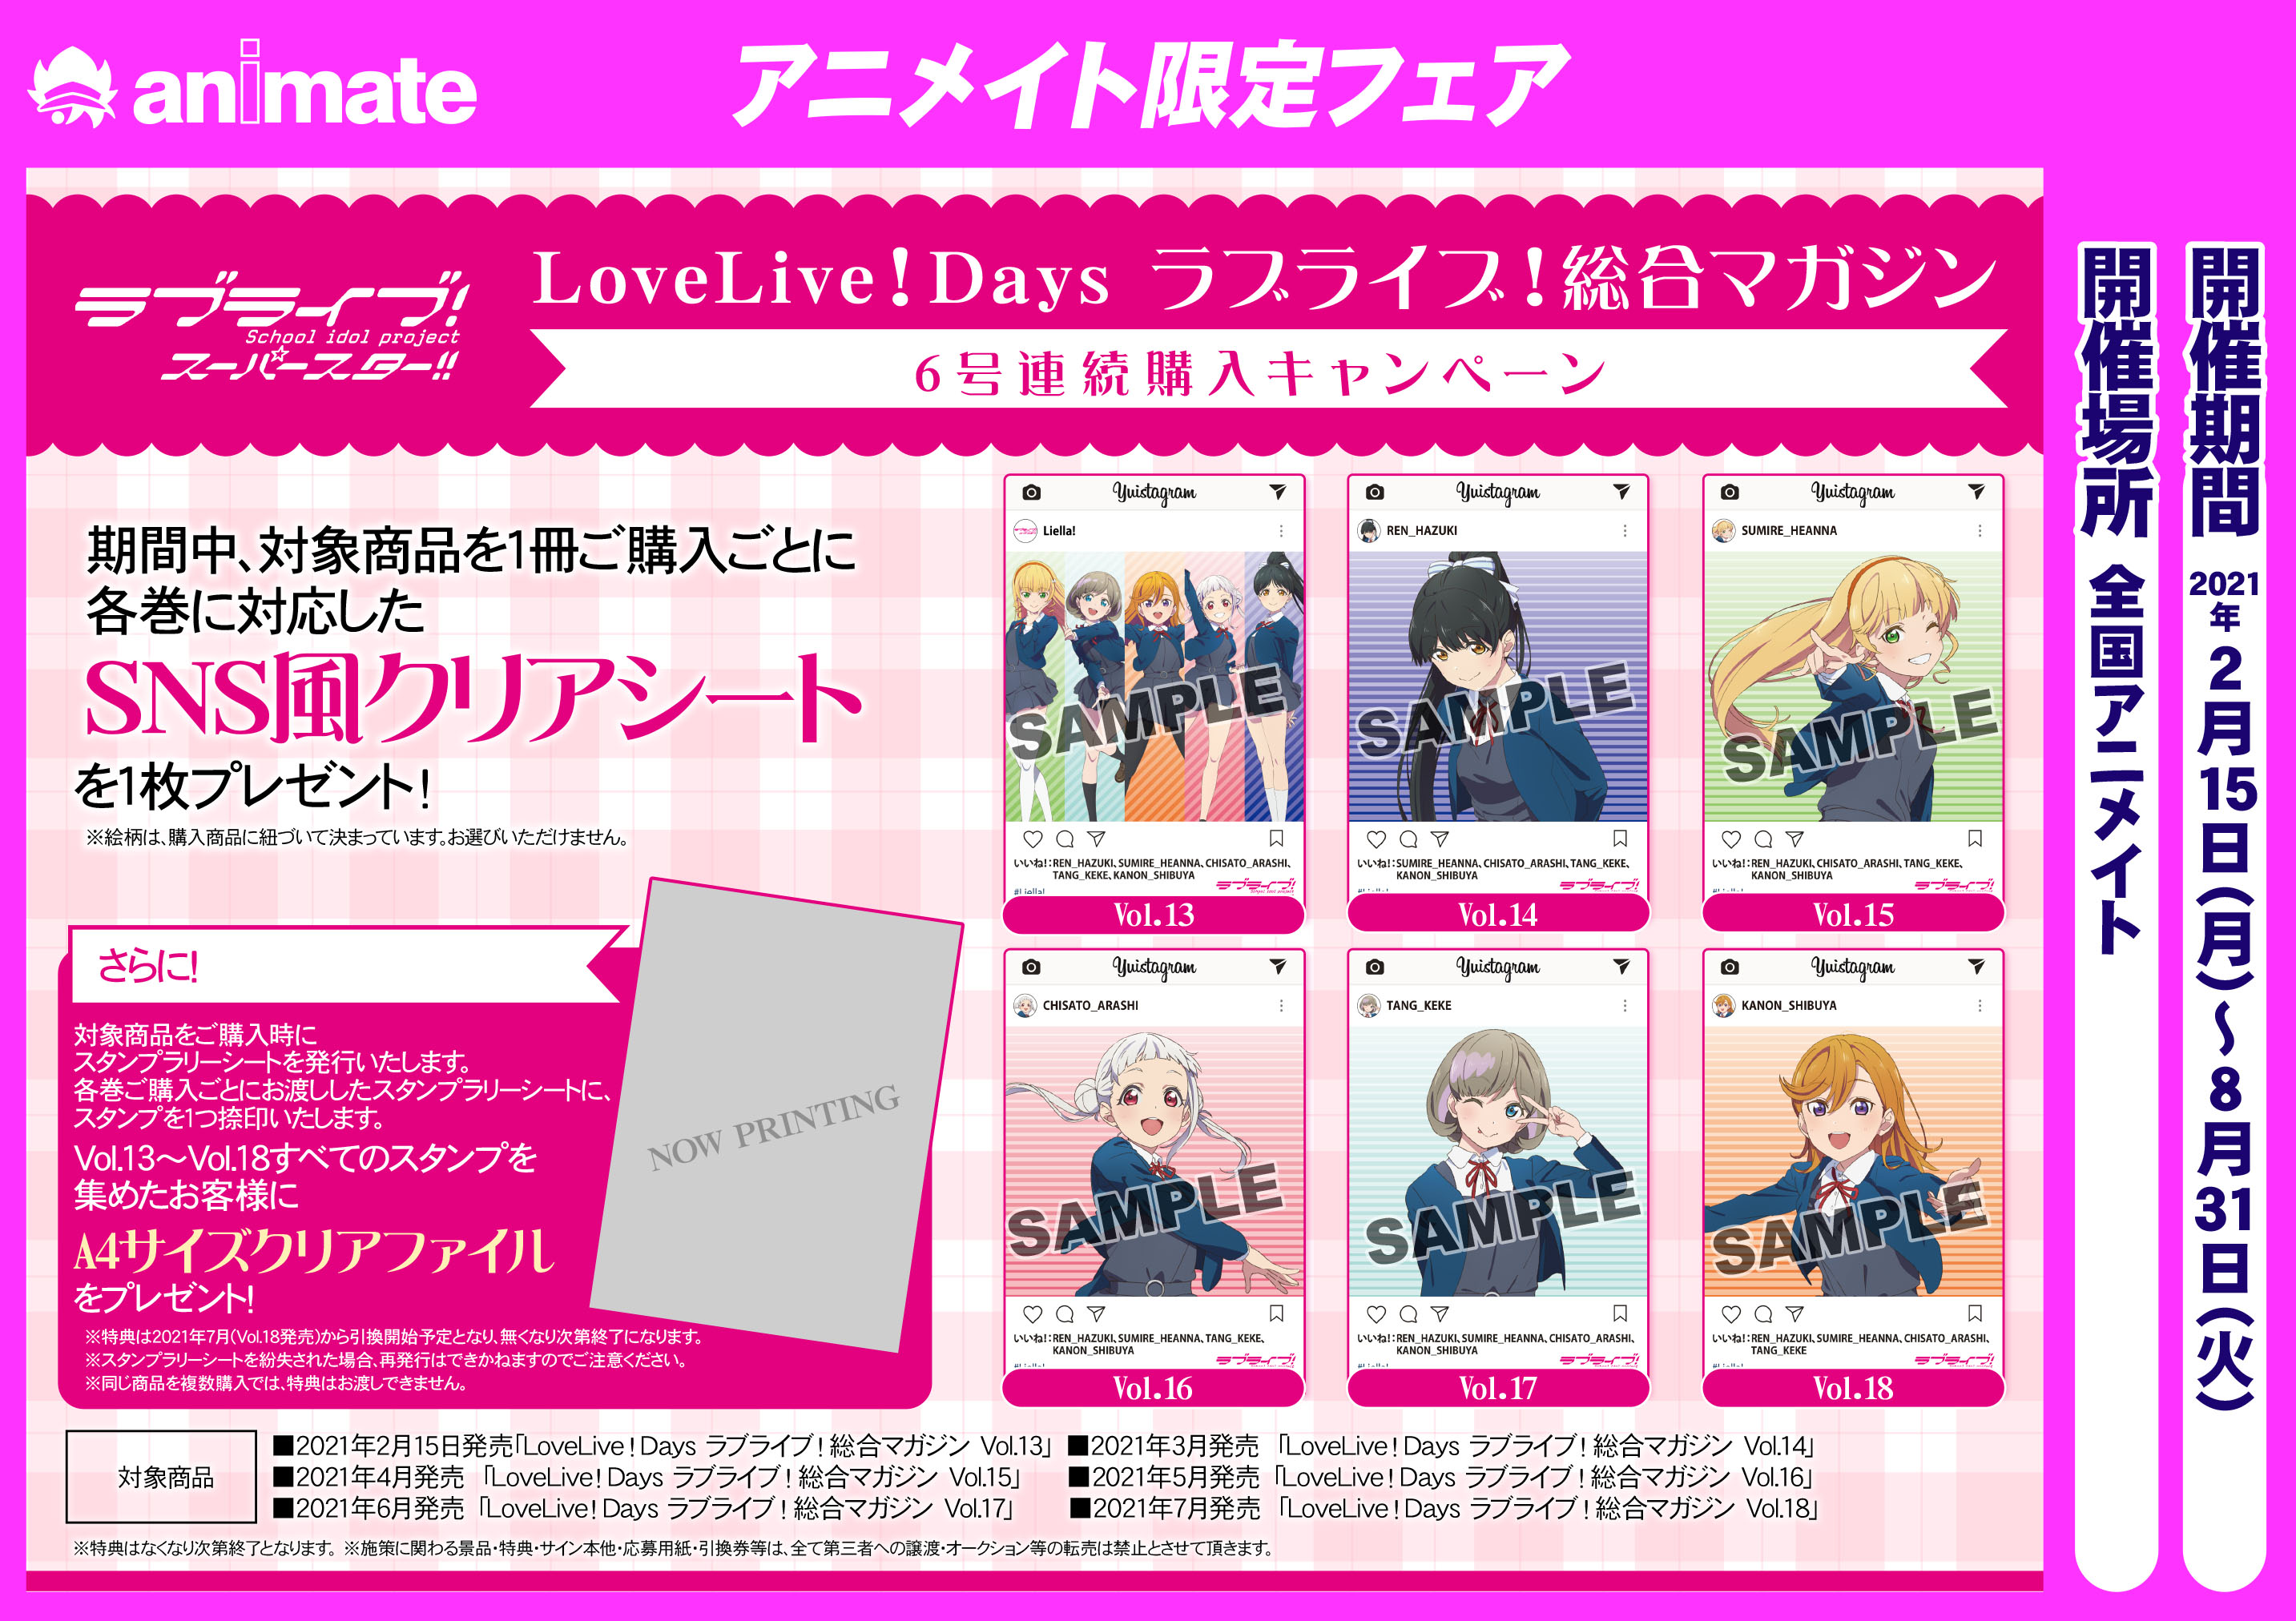 Lovelive Days ラブライブ 総合マガジン 6号連続購入キャンペーン アニメイト岐阜